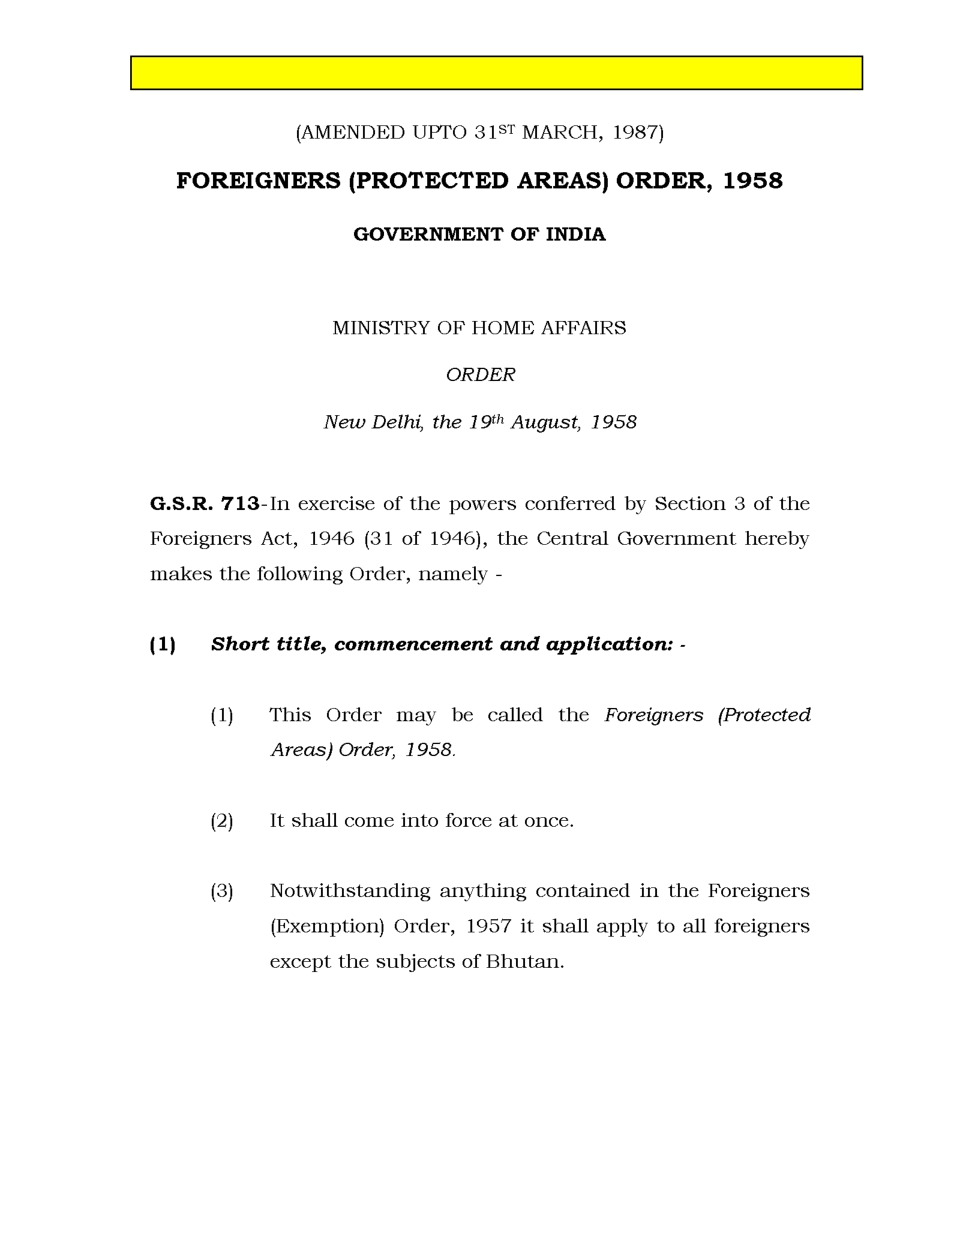 Приложение №8 Районы Индии требующие получения разрешений (пермитов) для посещения иностранцами